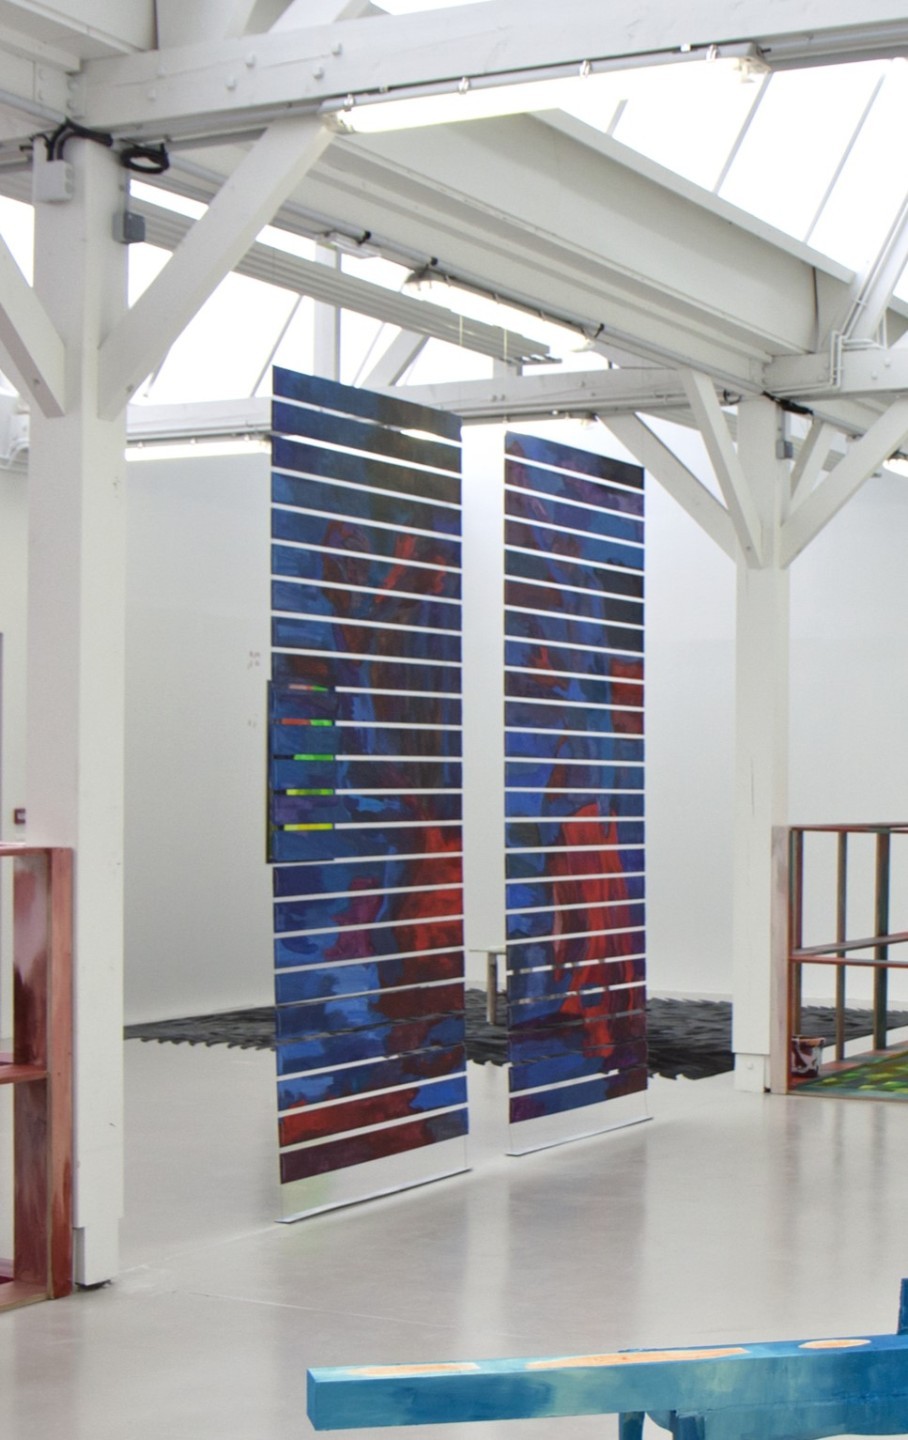 L'oeuvre est composée de deux installations similaires. Chaque installation est composée de lame de bois horizontales, alignées verticalement et suspendues au plafond, sur lesquels sont peinte une grande acrylique aux formes rouges et bleues.